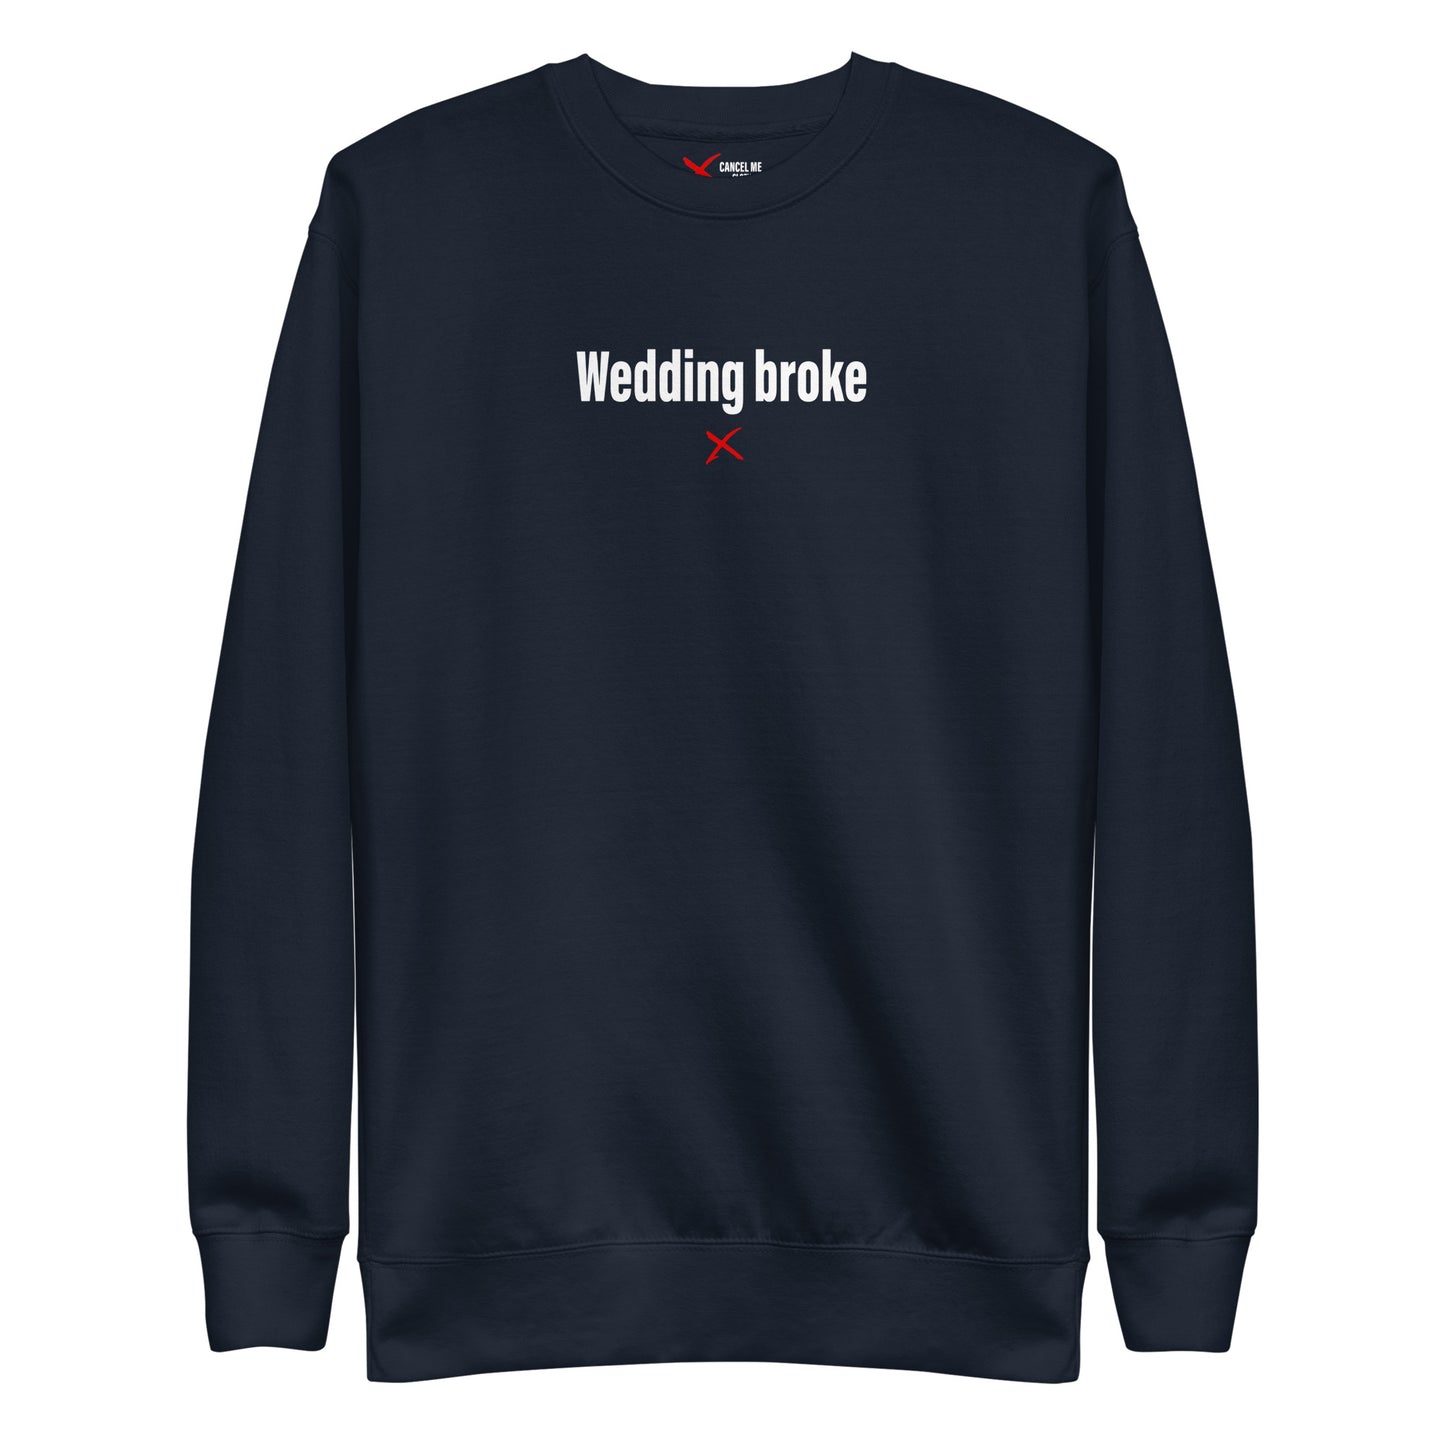 Wedding broke - Sweatshirt